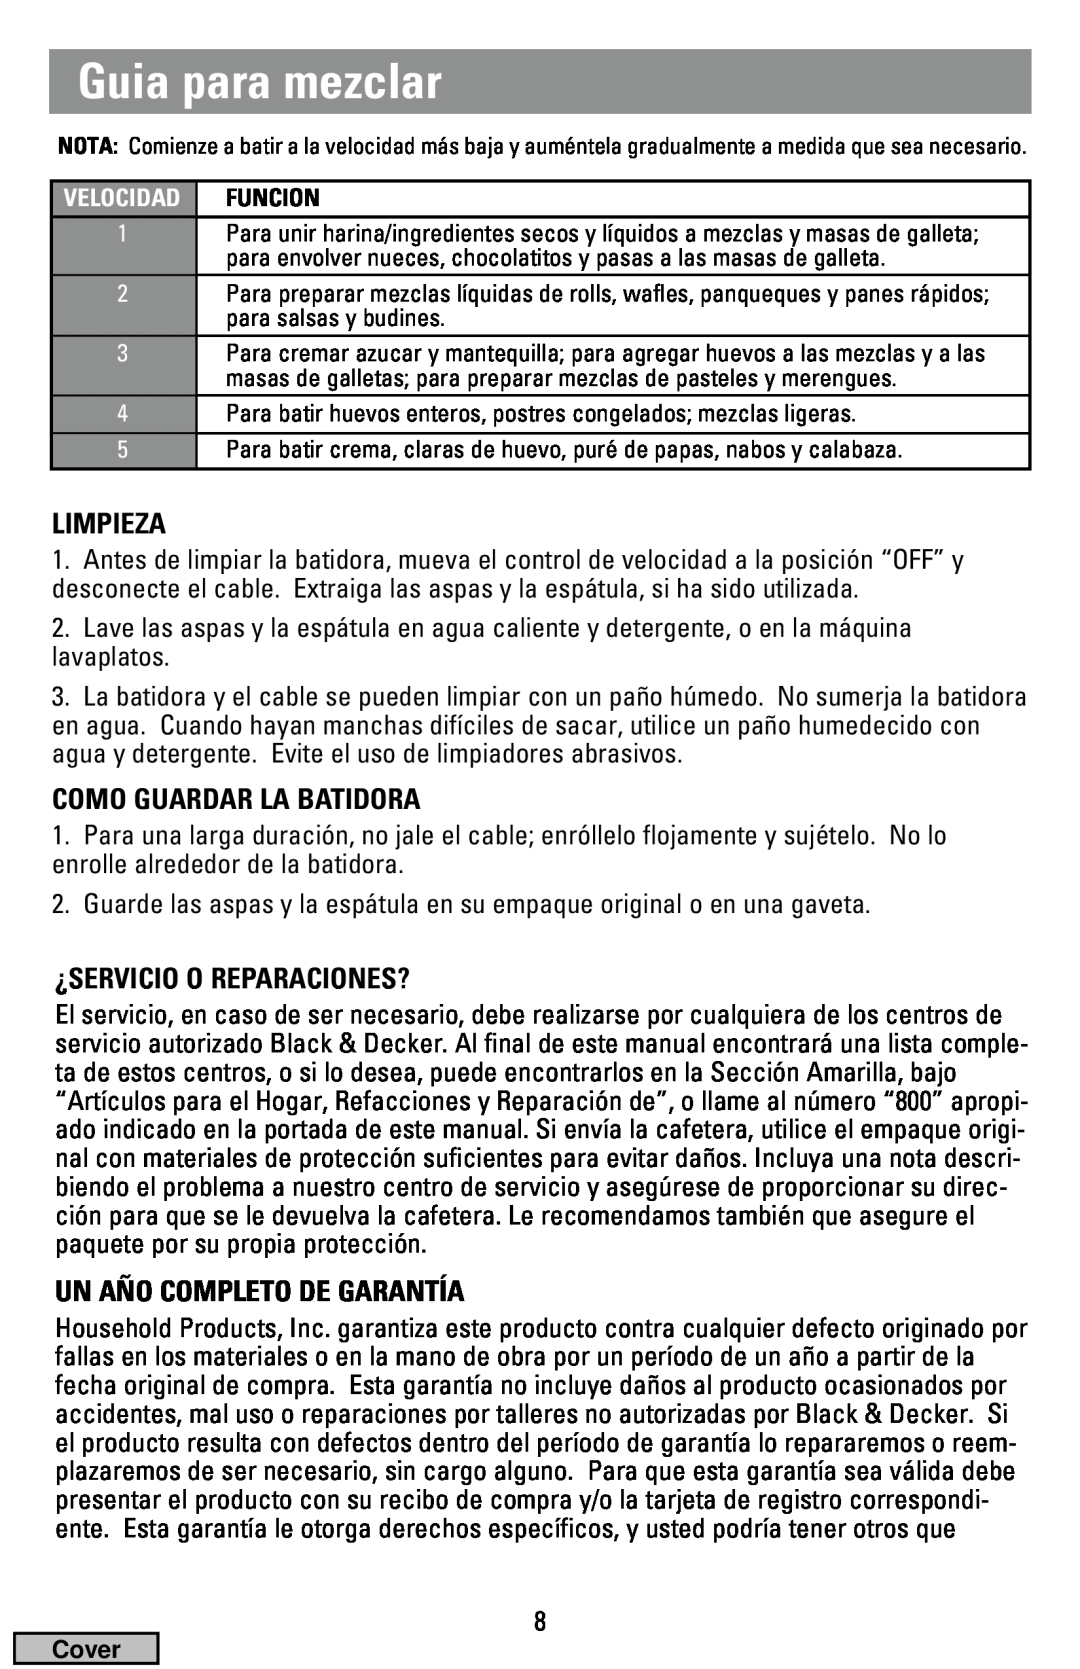 Black & Decker MX70, MX50 manual Guia para mezclar, Limpieza, Como Guardar La Batidora, ¿Servicio O Reparaciones? 